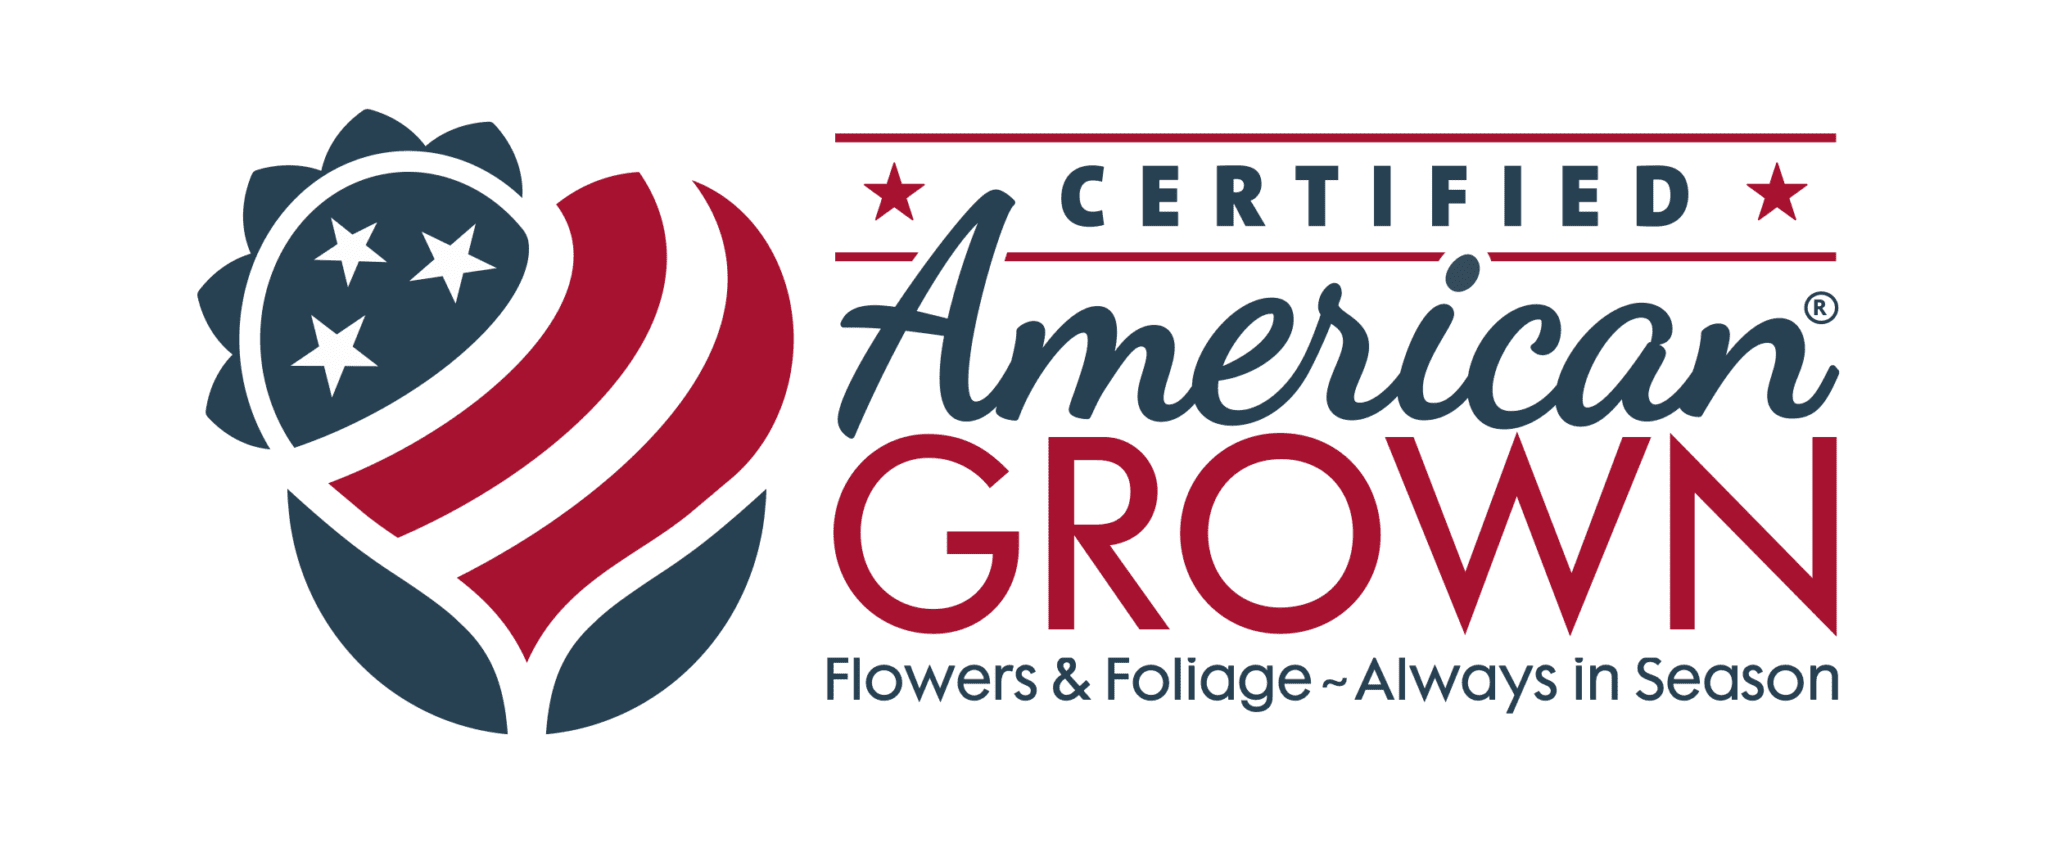 Sponsor Certified American Grown Flowers